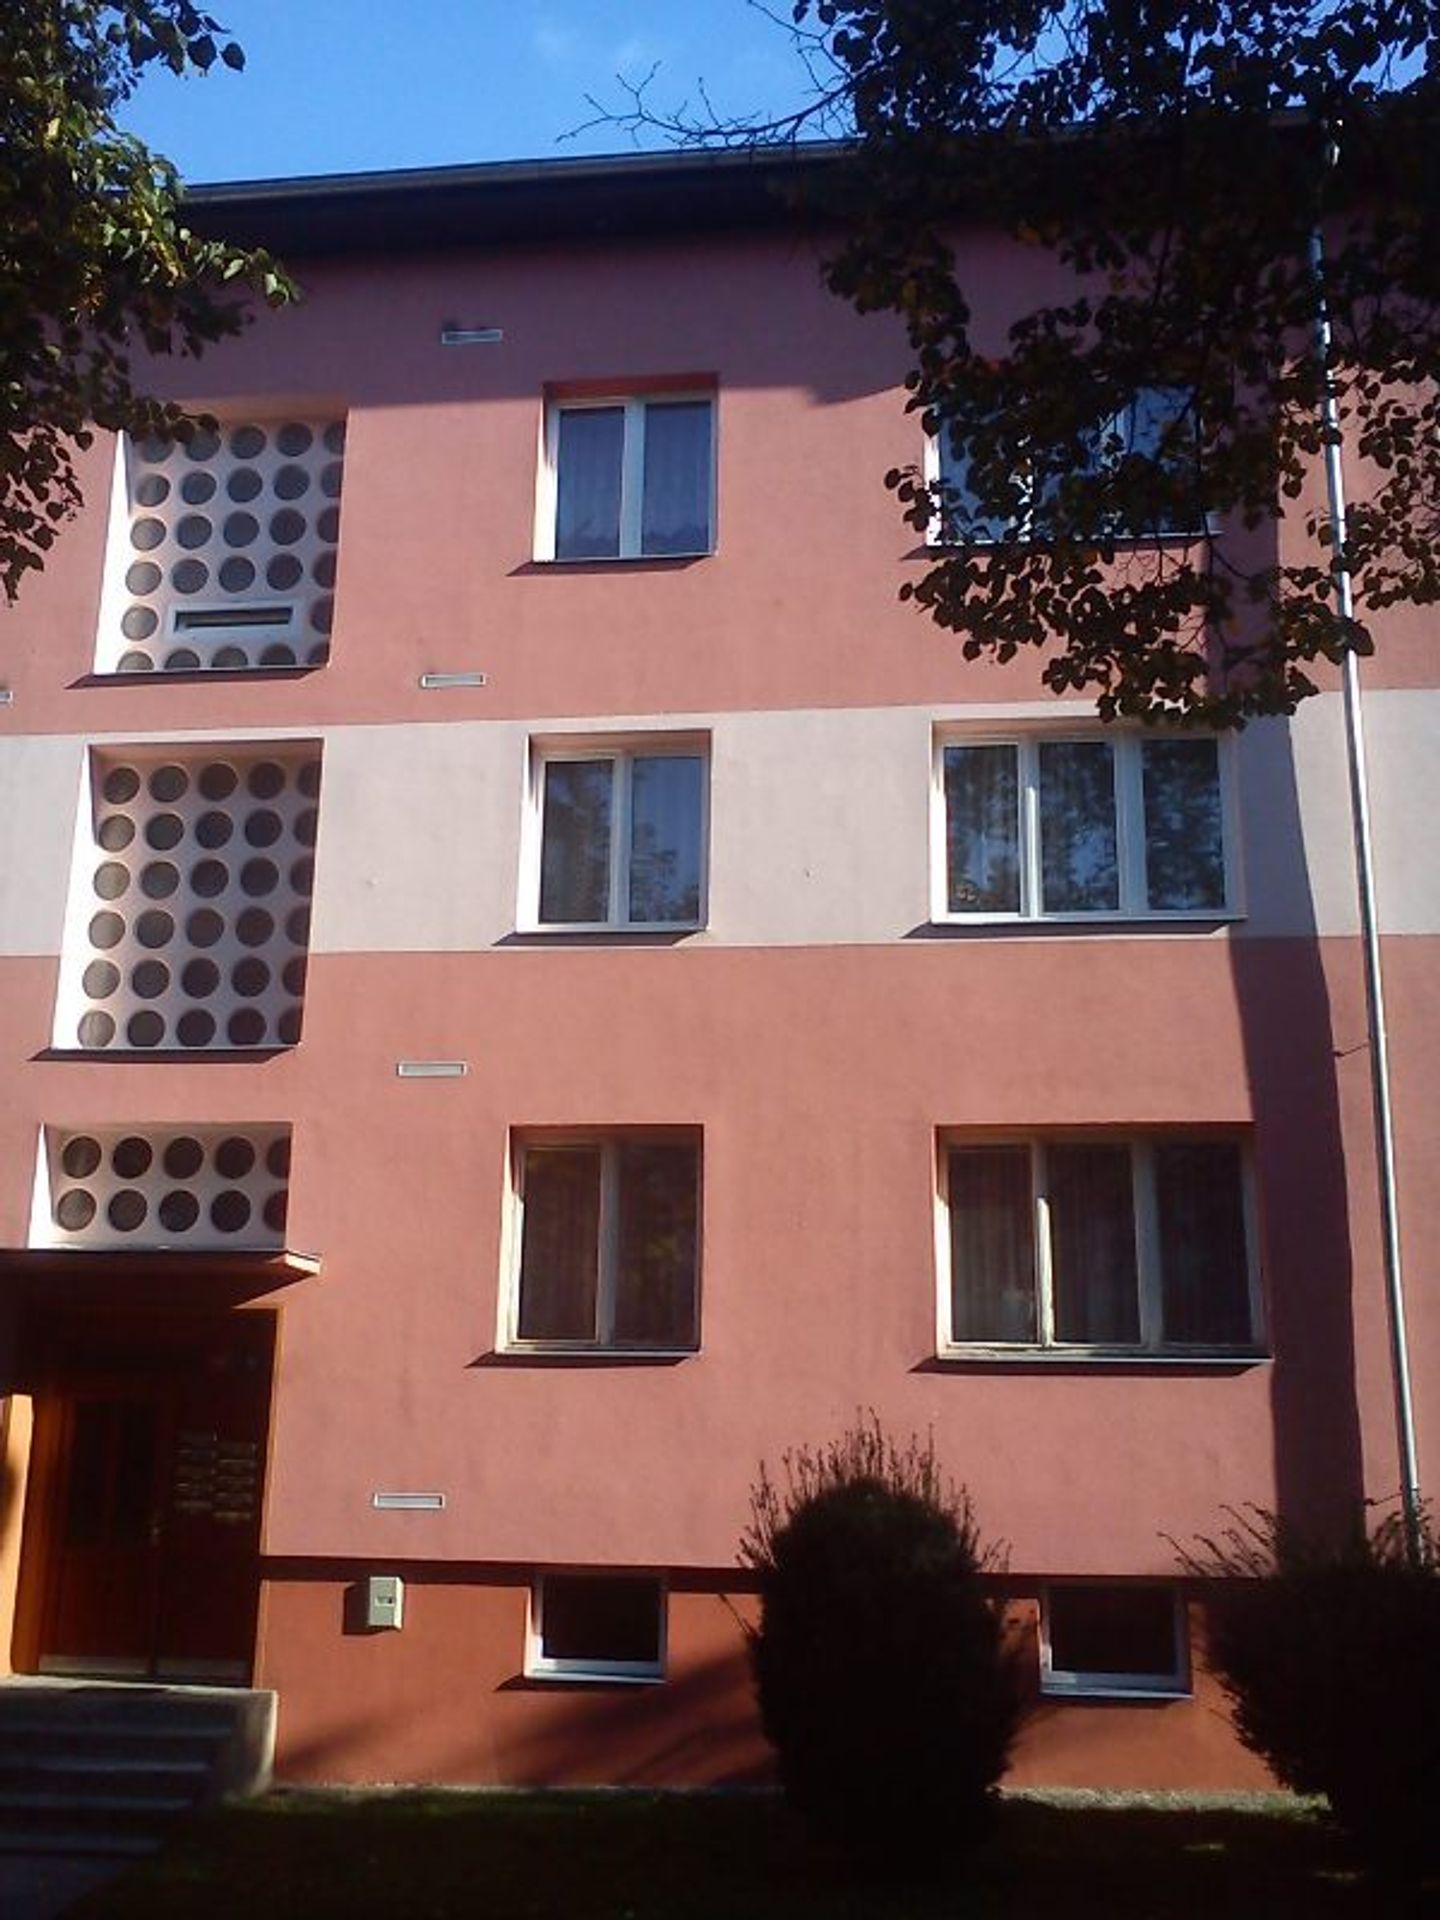 Prodej majteku: Byt Ústí - Bukov - 1 - GALERIE: Prodej bytu v Ústí nad Labem v Bukově (1/5)